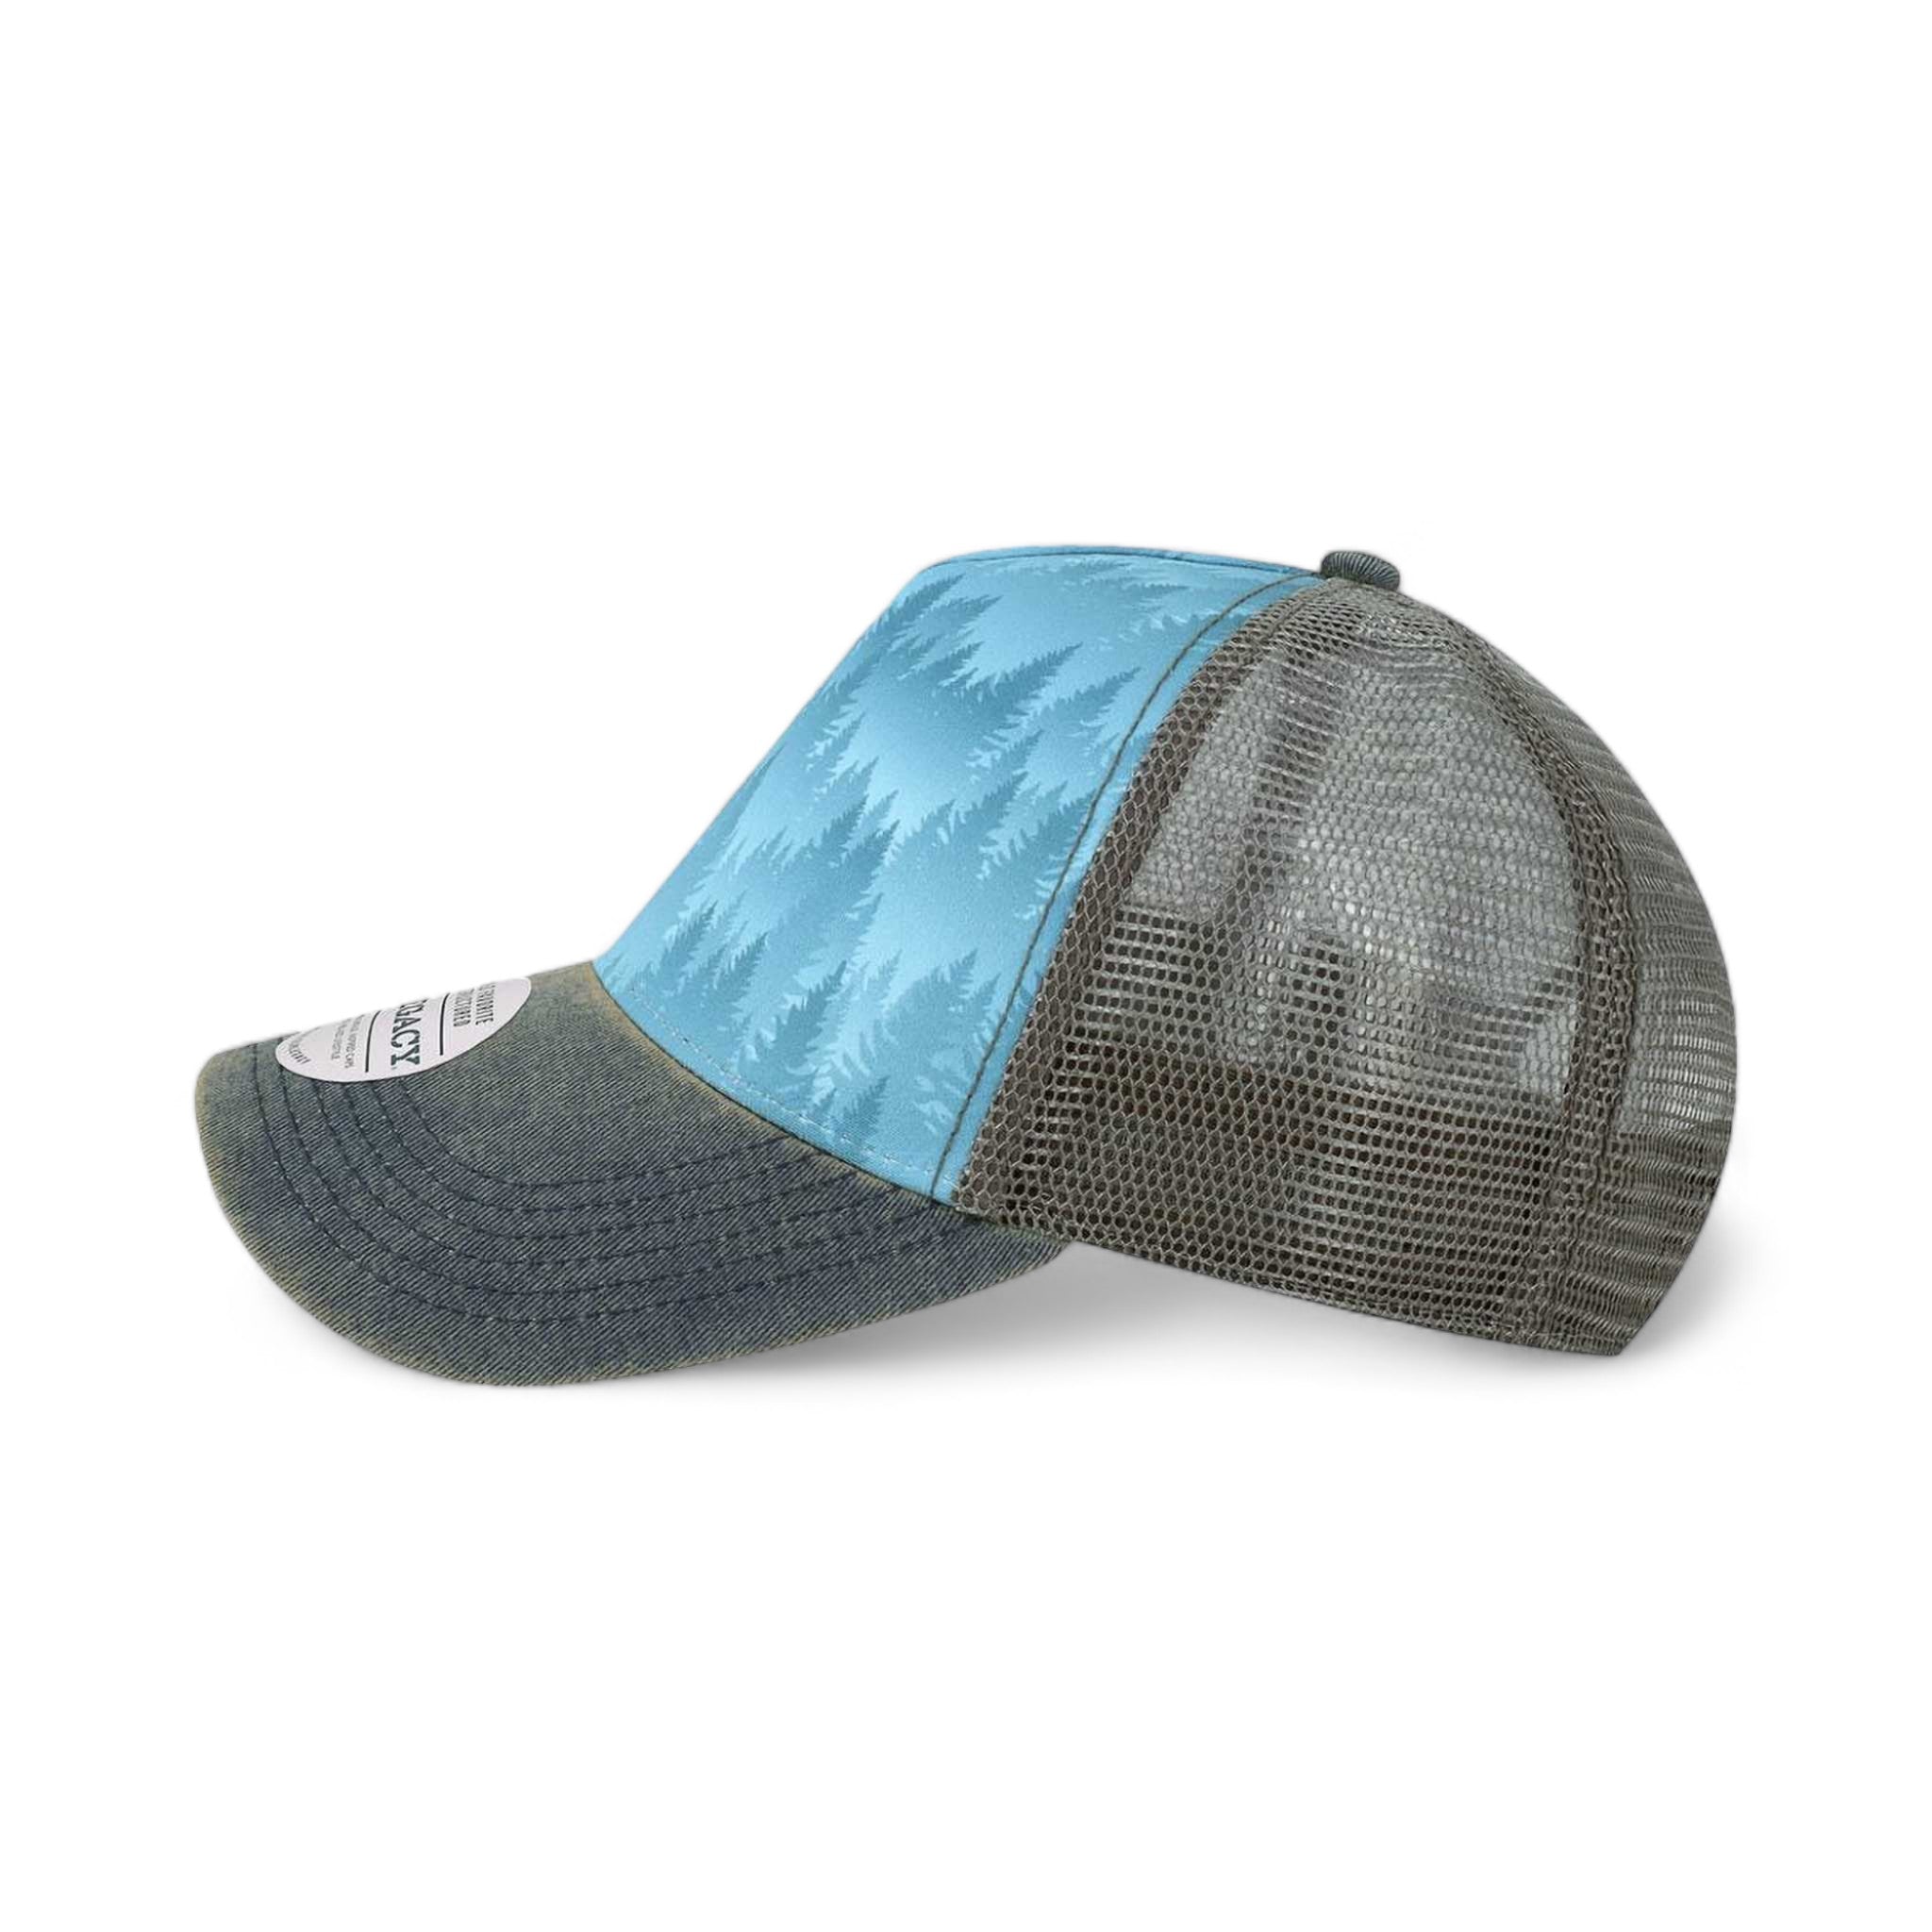 Side view of LEGACY OFAFP custom hat in blue pines